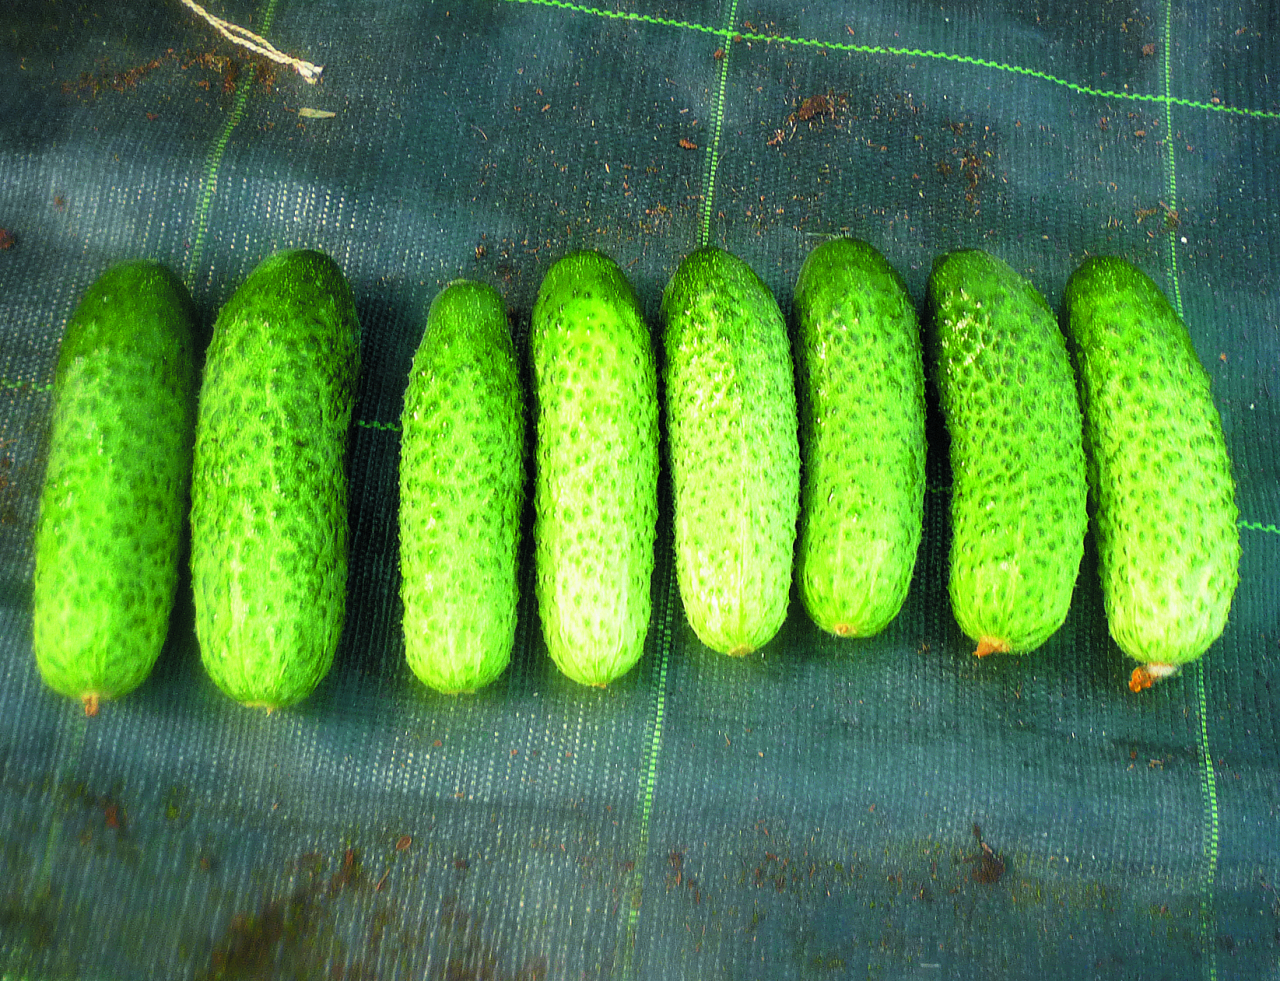  Viena auga gurķiem krāsa var atšķirties atkarībā no apgaismojuma.